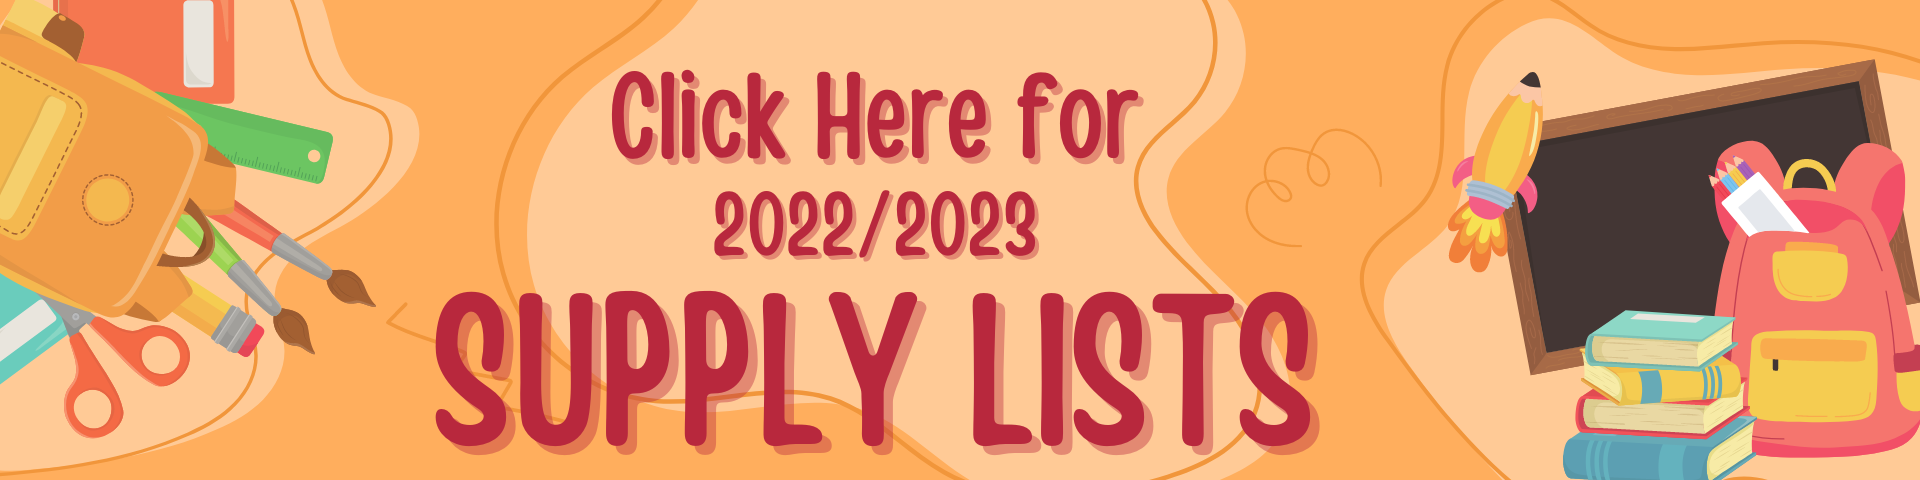 2022/2023 Supply List